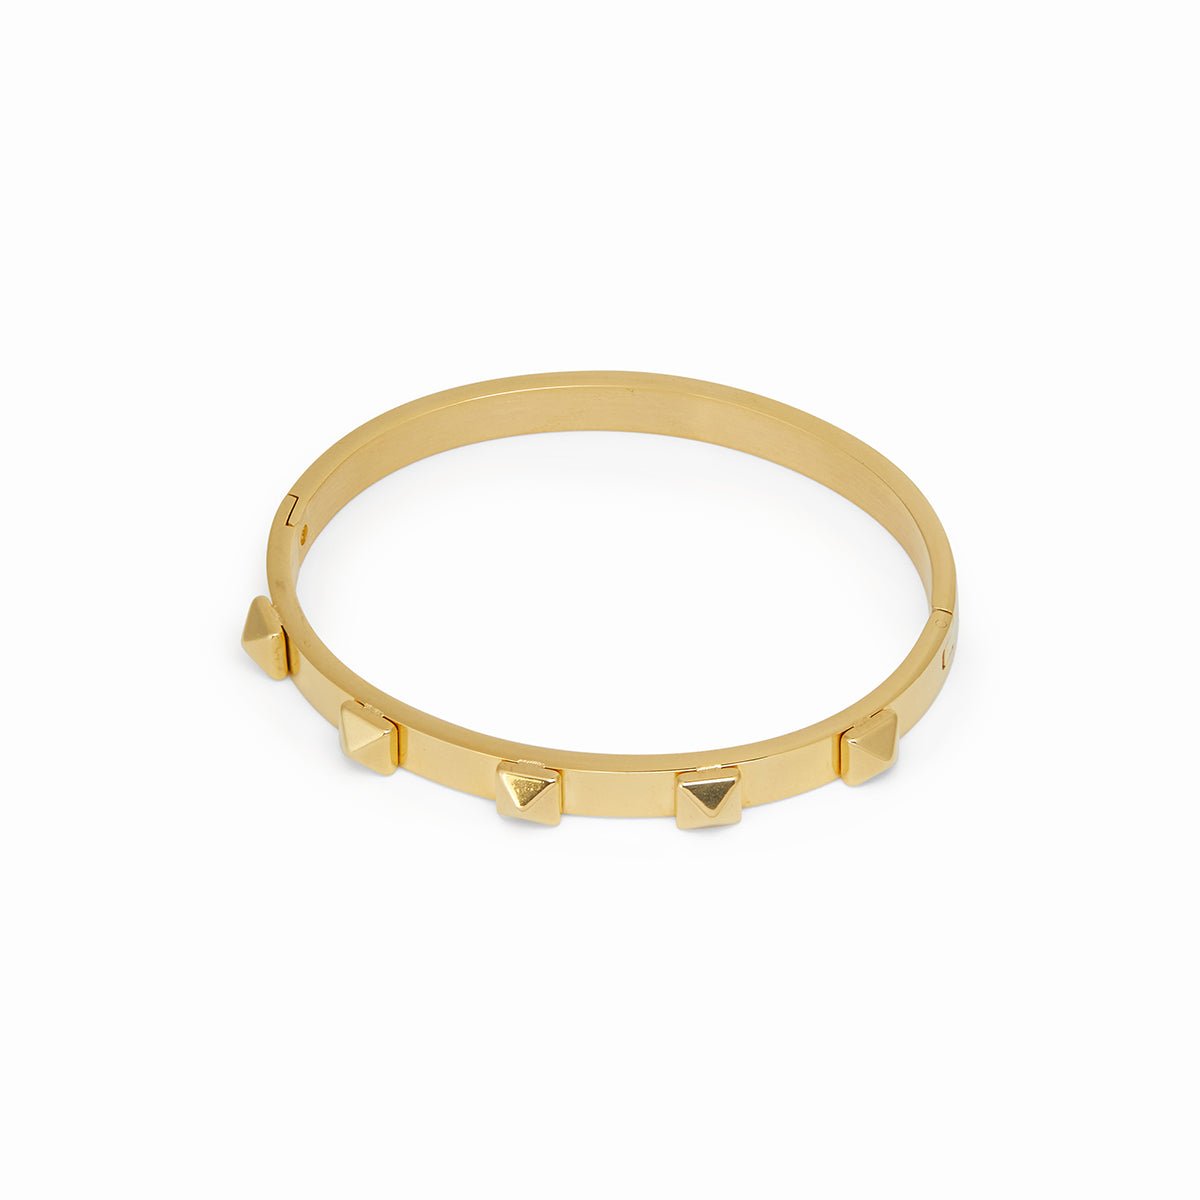 Bracelete Tachas Banhado em Ouro 18K - Murano Joias